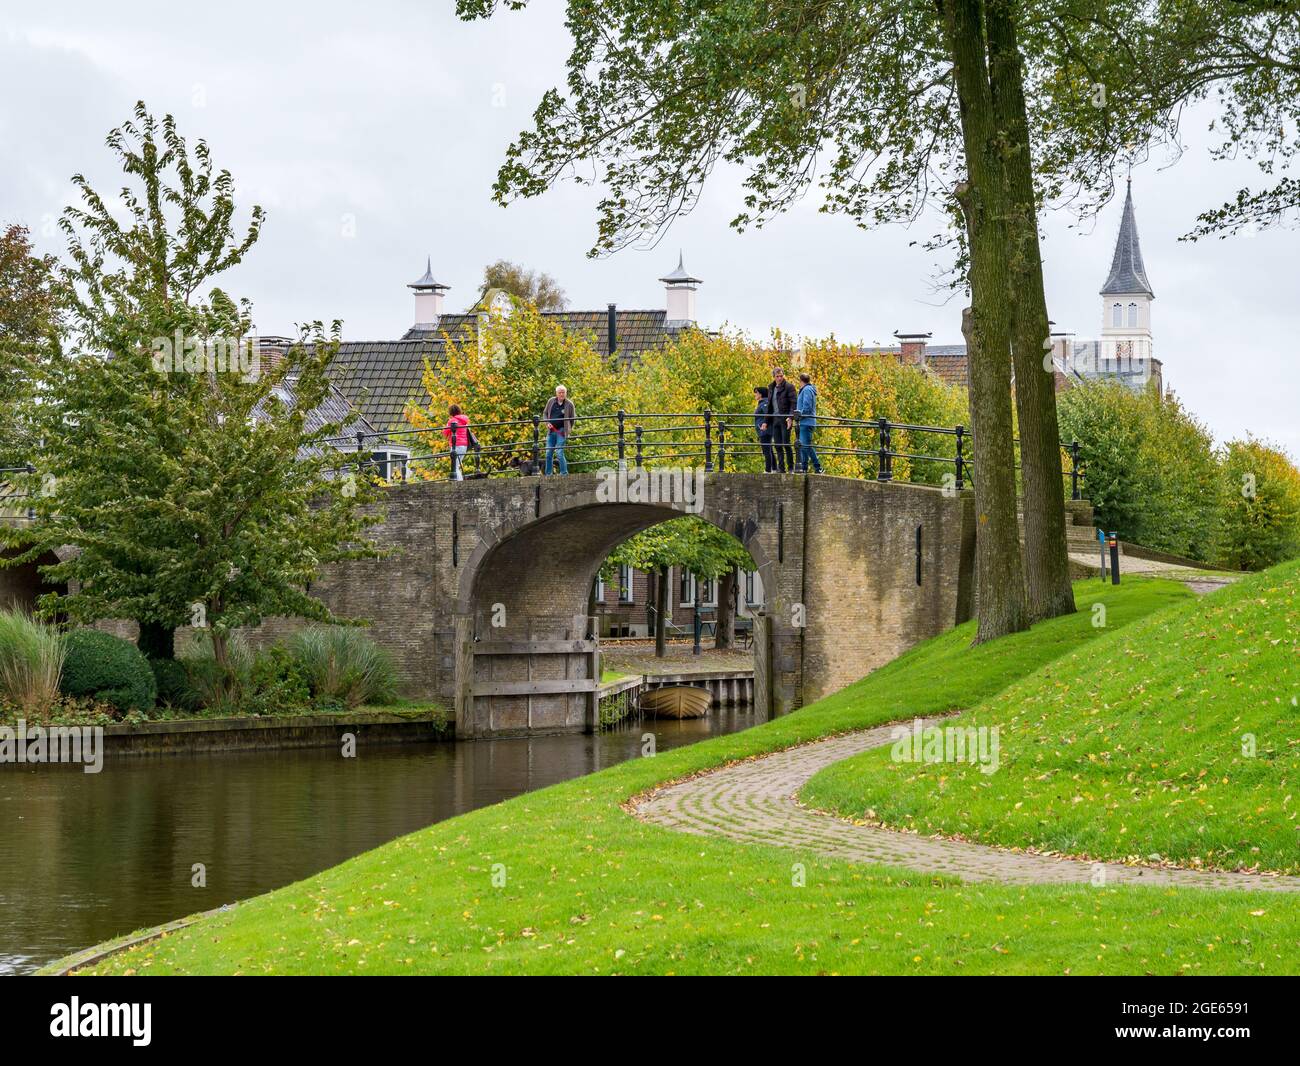 Personnes marchant sur le pont de la porte d'eau de Woudsender dans la ville fortifiée de Sloten, Sleat, Friesland, pays-Bas Banque D'Images